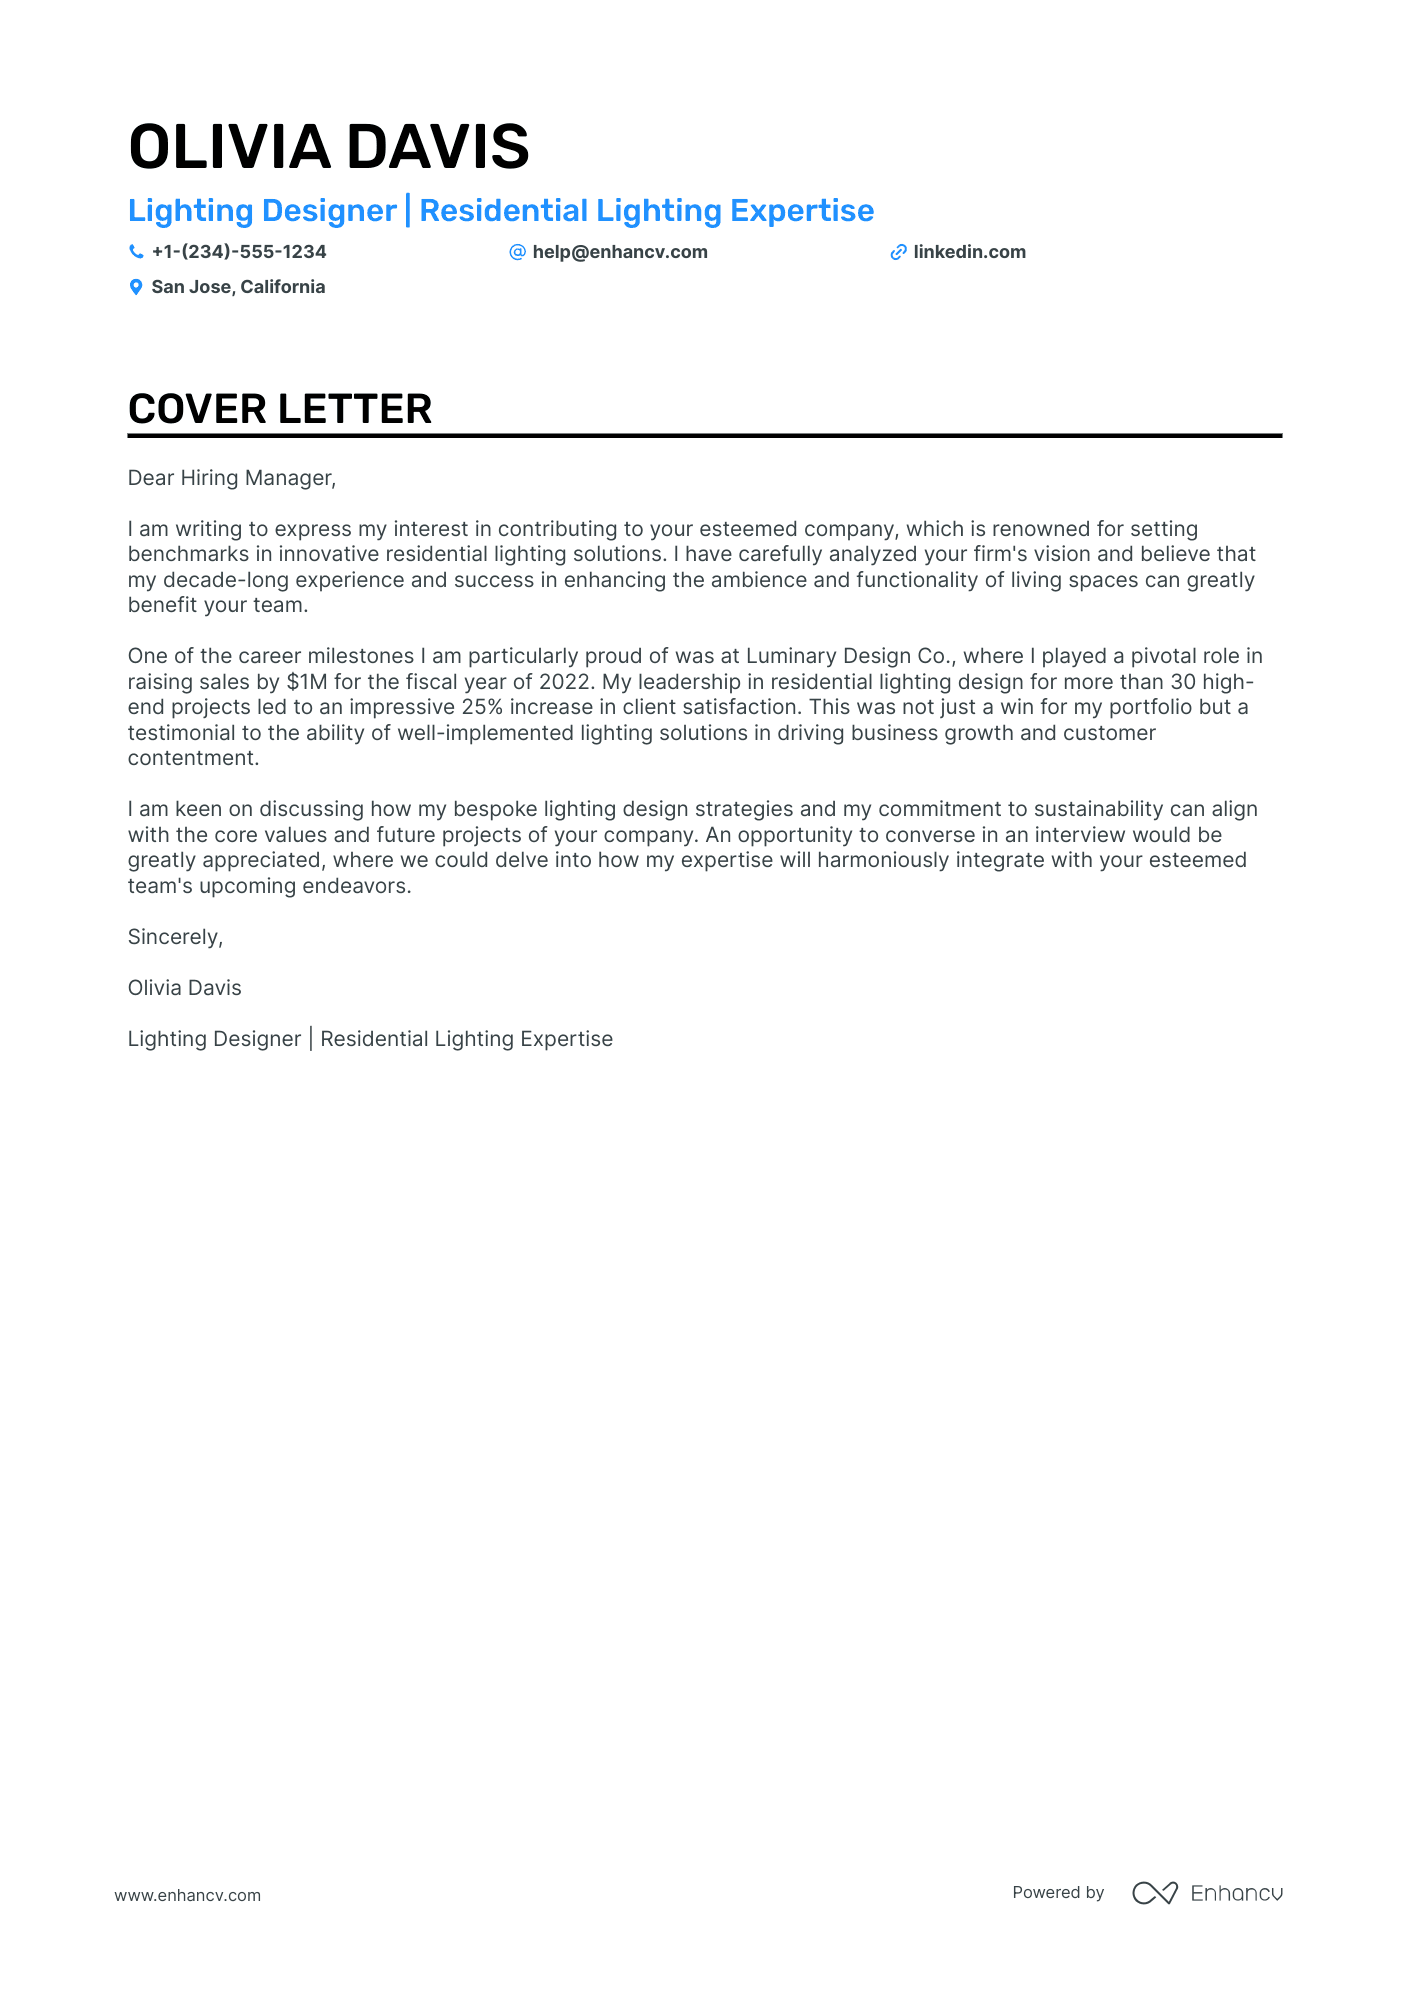 Lighting Designer cover letter